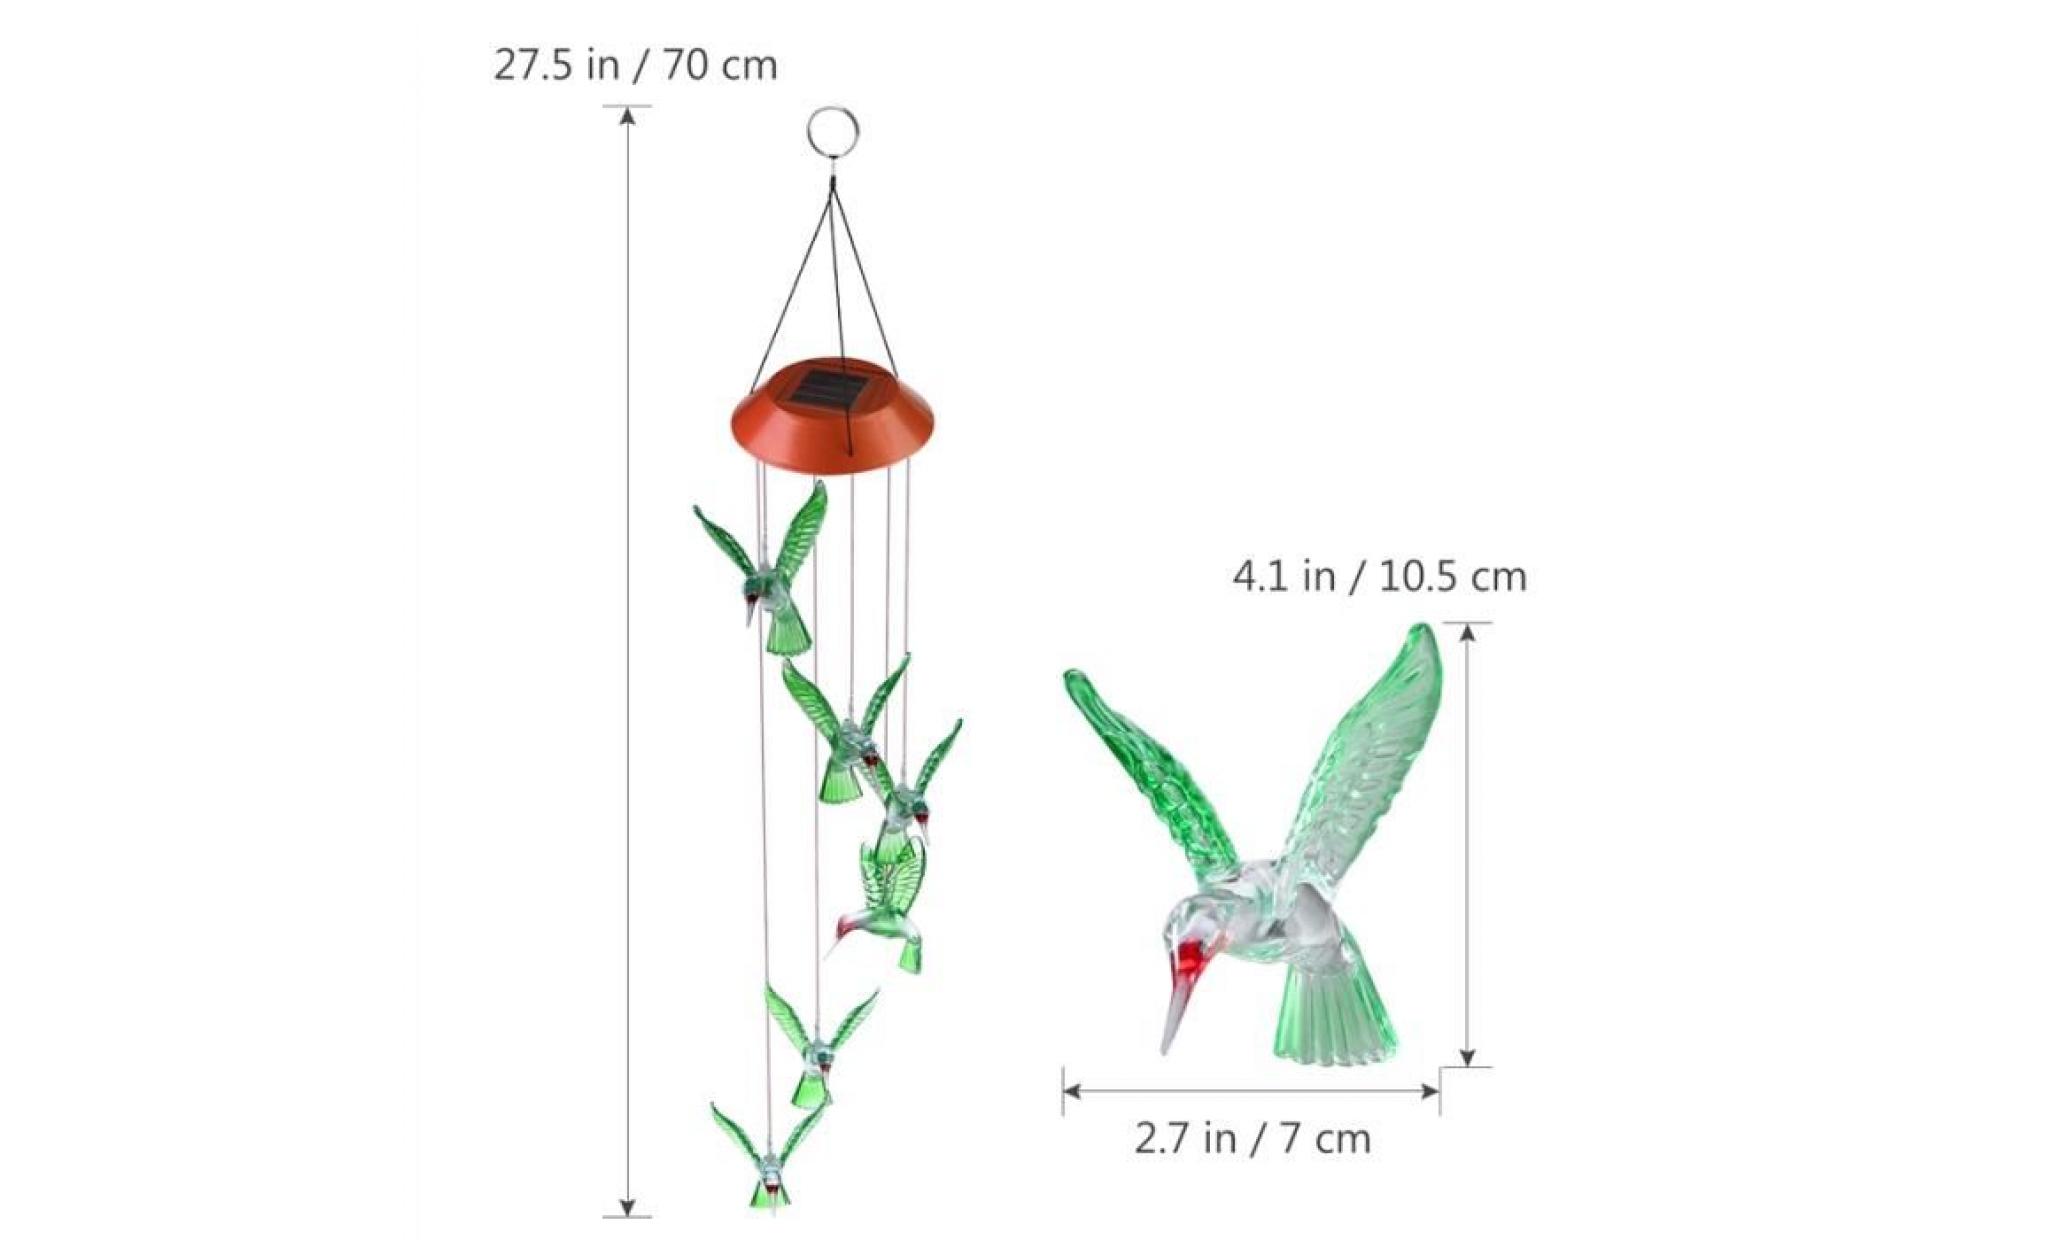 yunlights colibri vent carillons led solaire mobile carillon À vent couleur changement automatique lumière capteur vent spinner pas cher